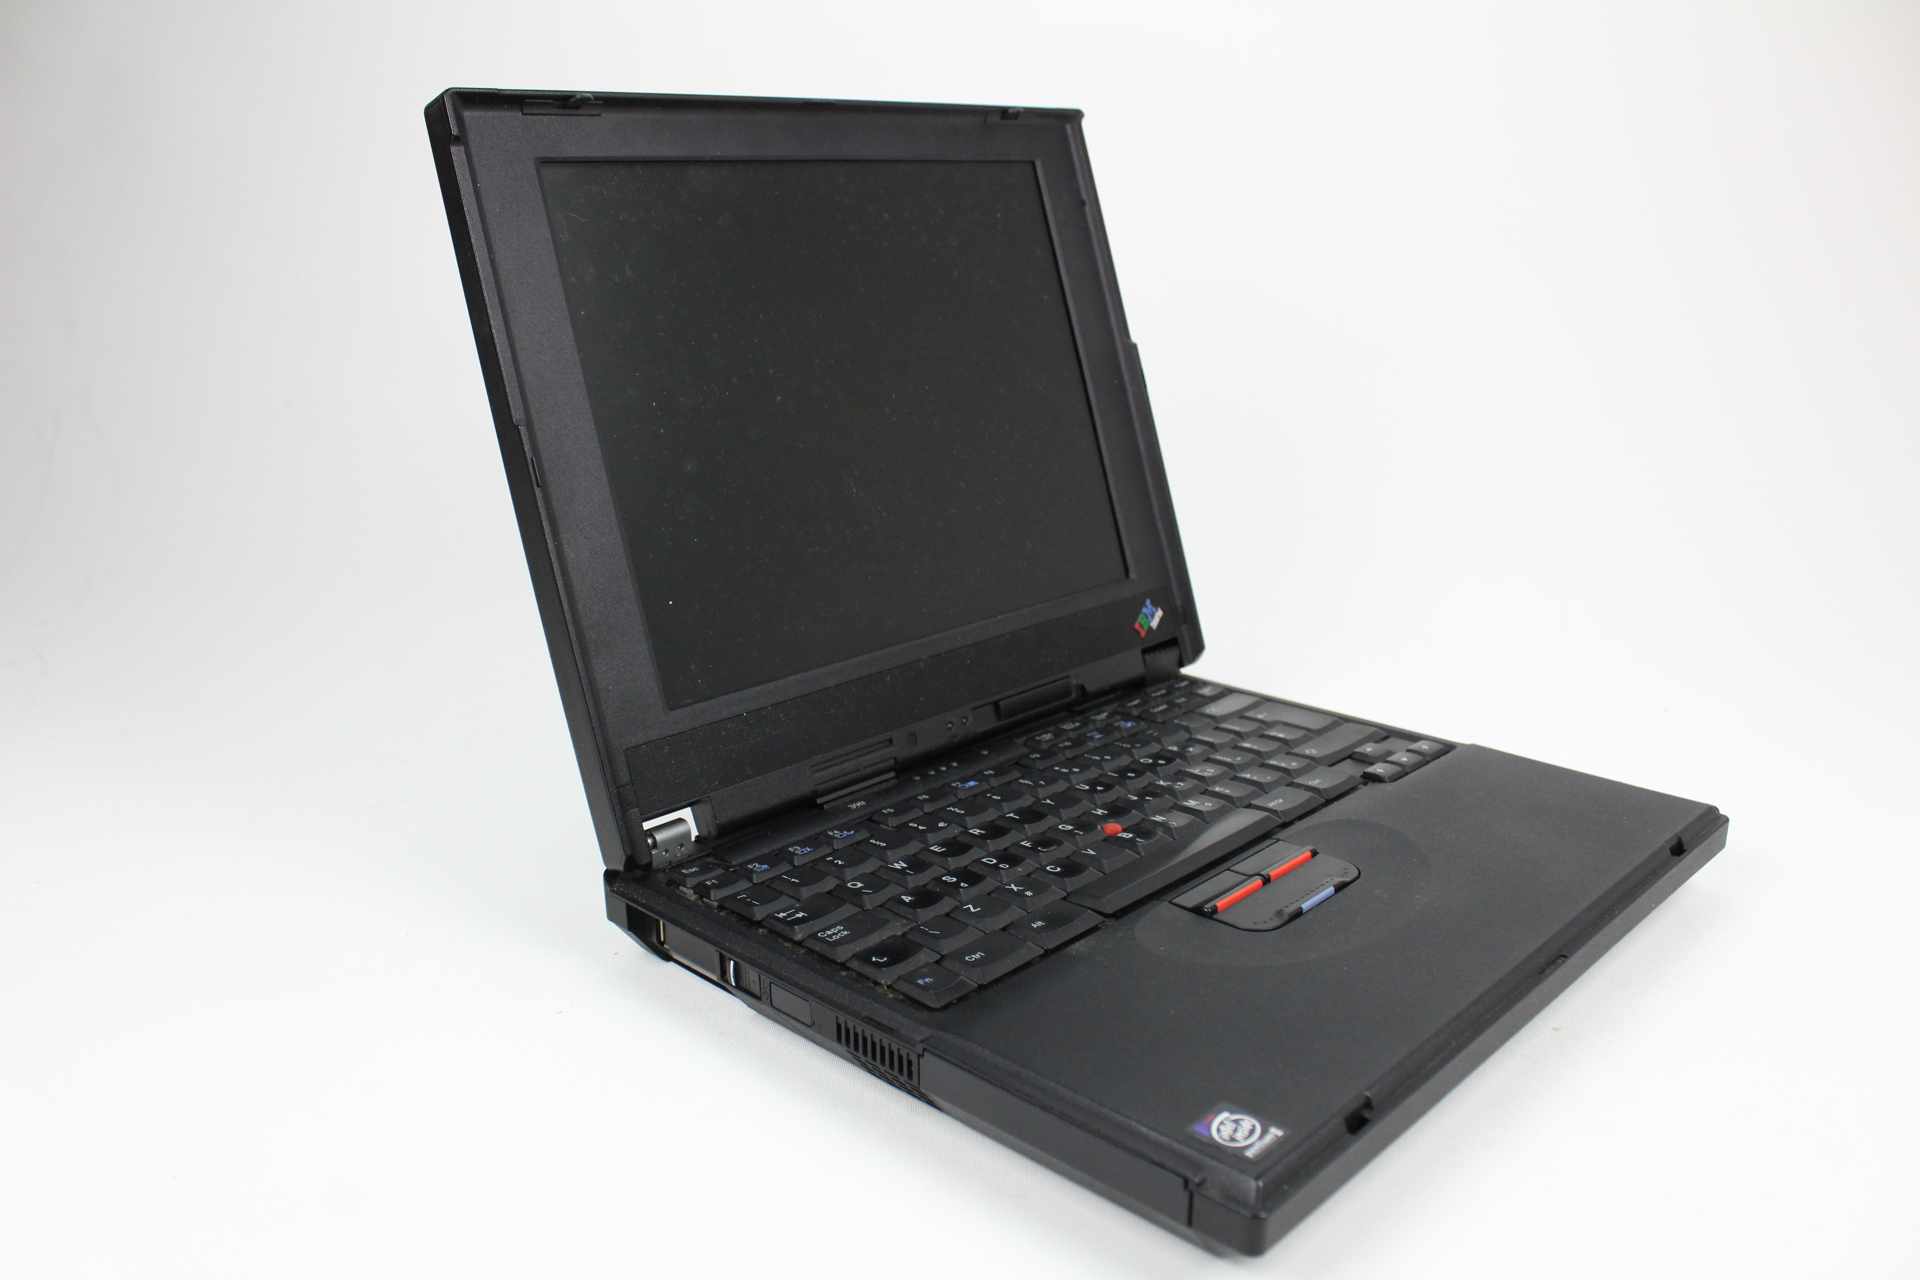 IBM ThinkPad 390